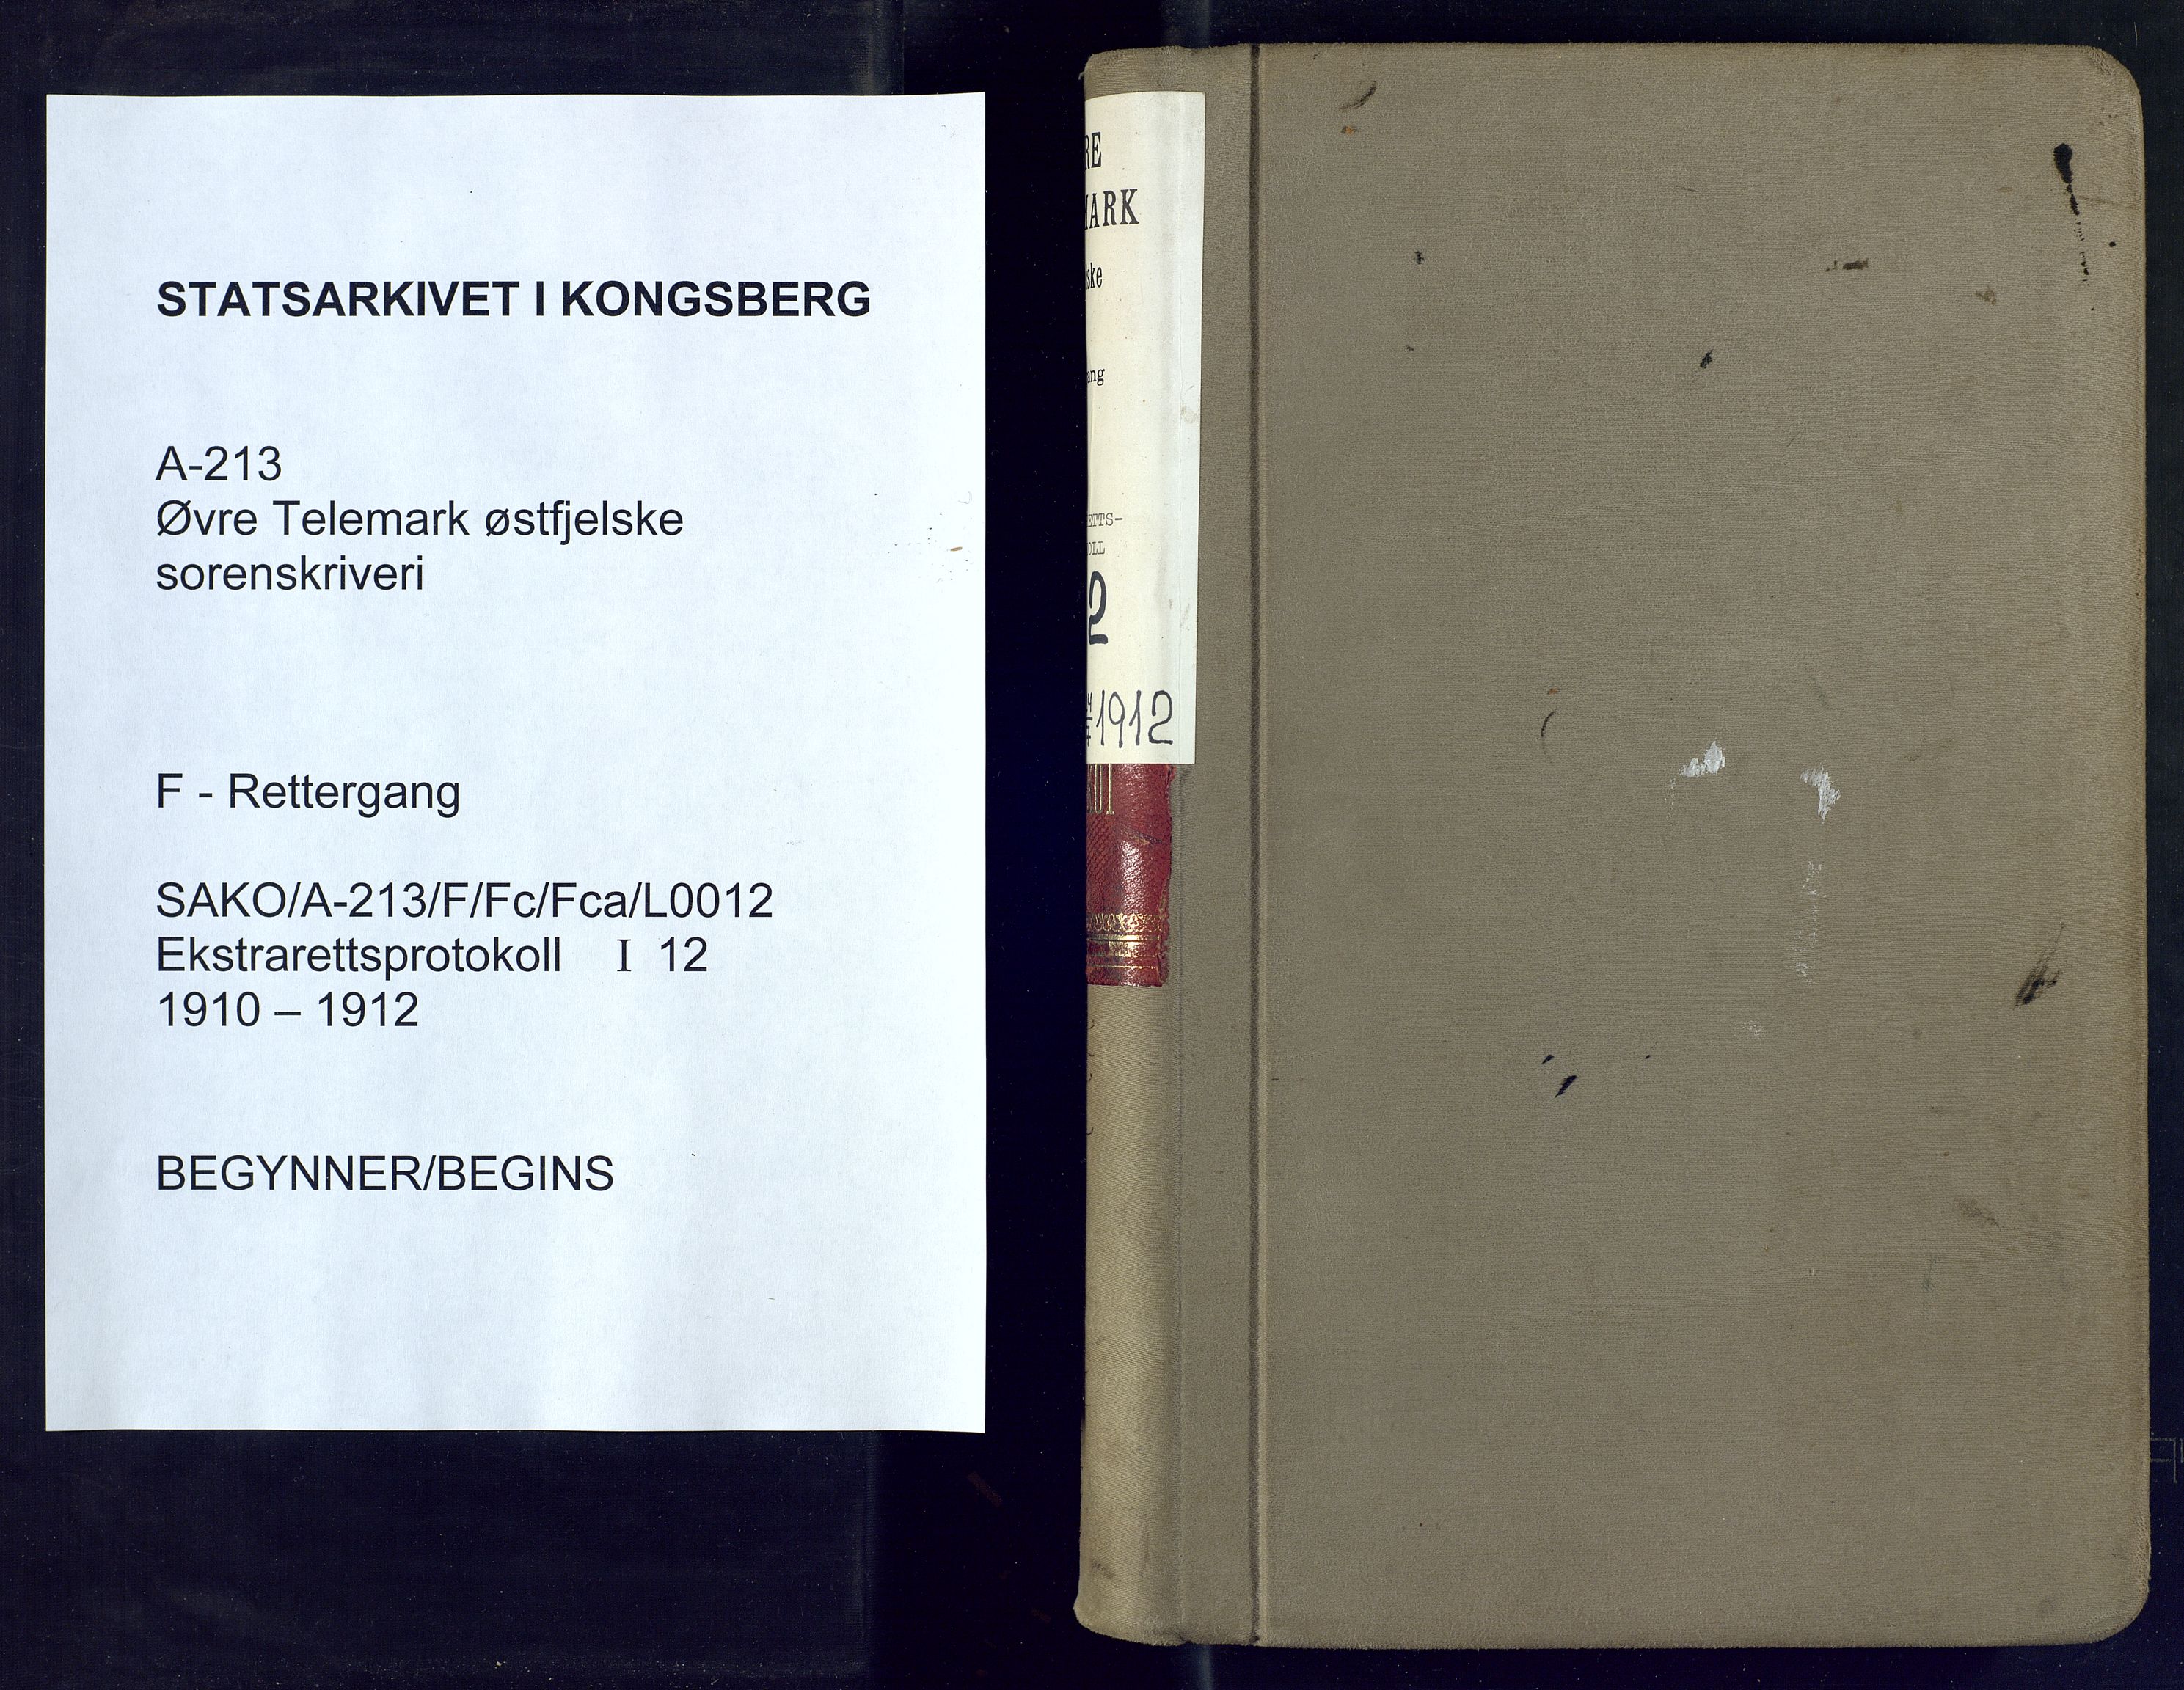 Øvre Telemark østfjelske sorenskriveri, SAKO/A-213/F/Fc/Fca/L0012: Ekstrarettsprotokoll, sivile saker, 1910-1912